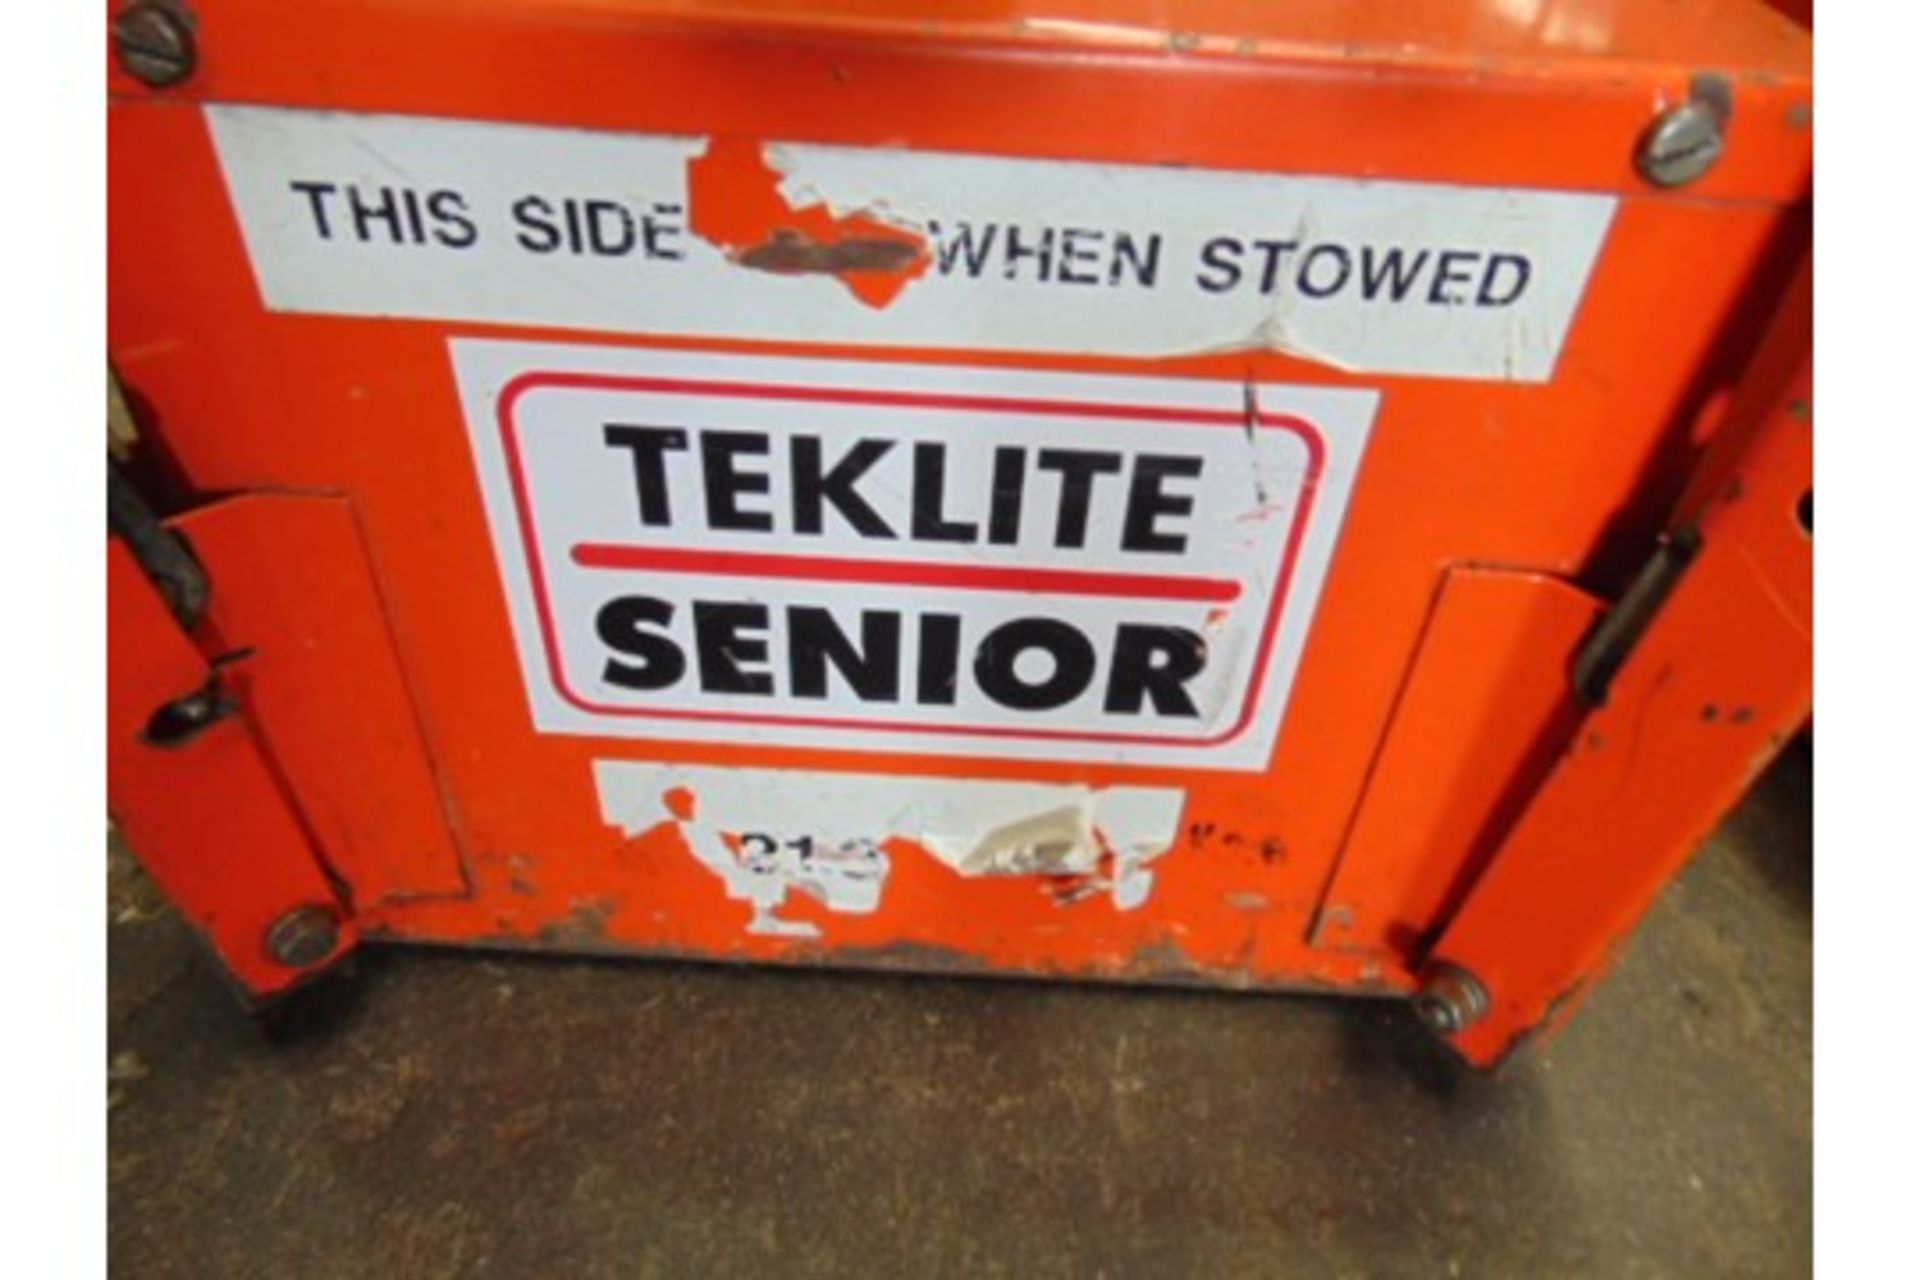 Teklite 5K-B2 Portable Worklight with Teklite Senior Battery - Image 3 of 4